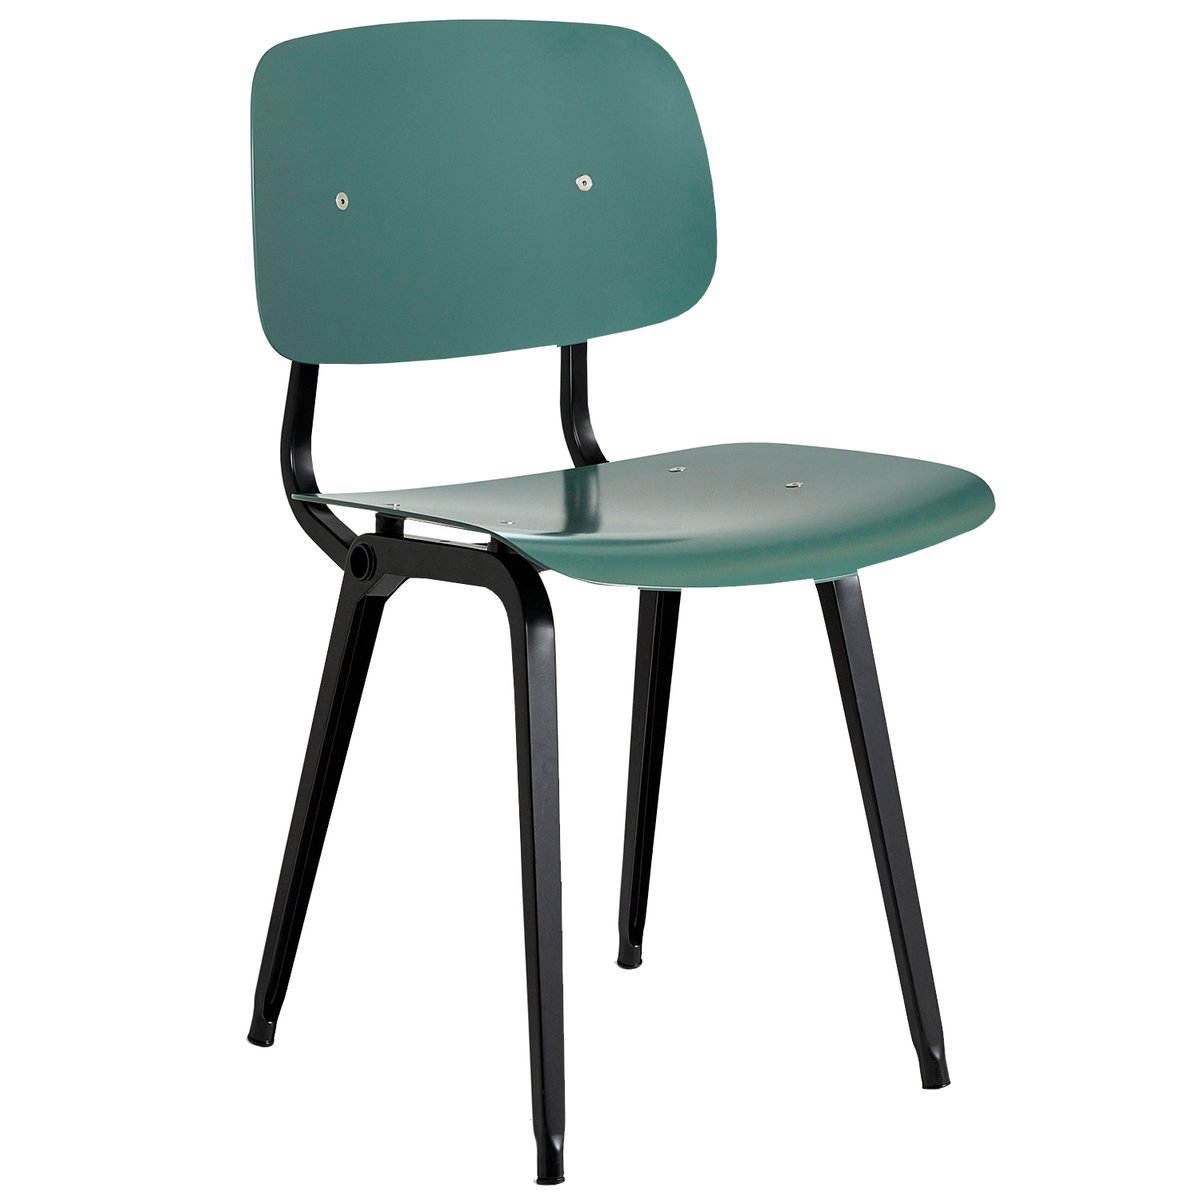 Slaapzaal Skim D.w.z Revolt chair, black - petrol green | Finnish Design Shop